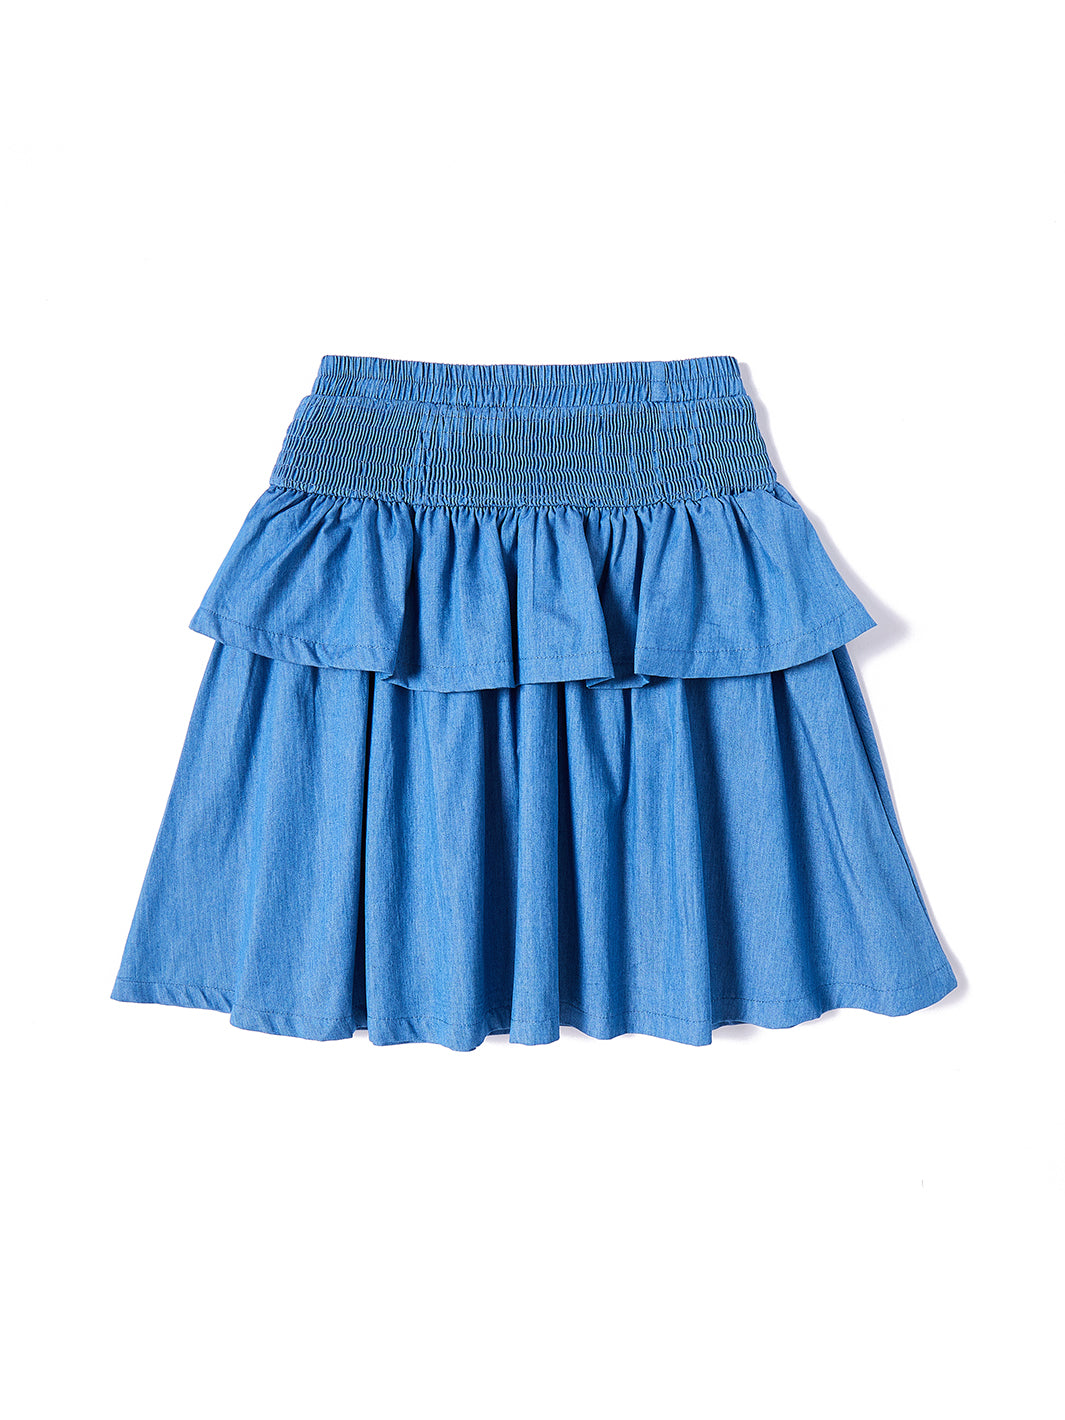 Layered Ruffled Skirt - Blue